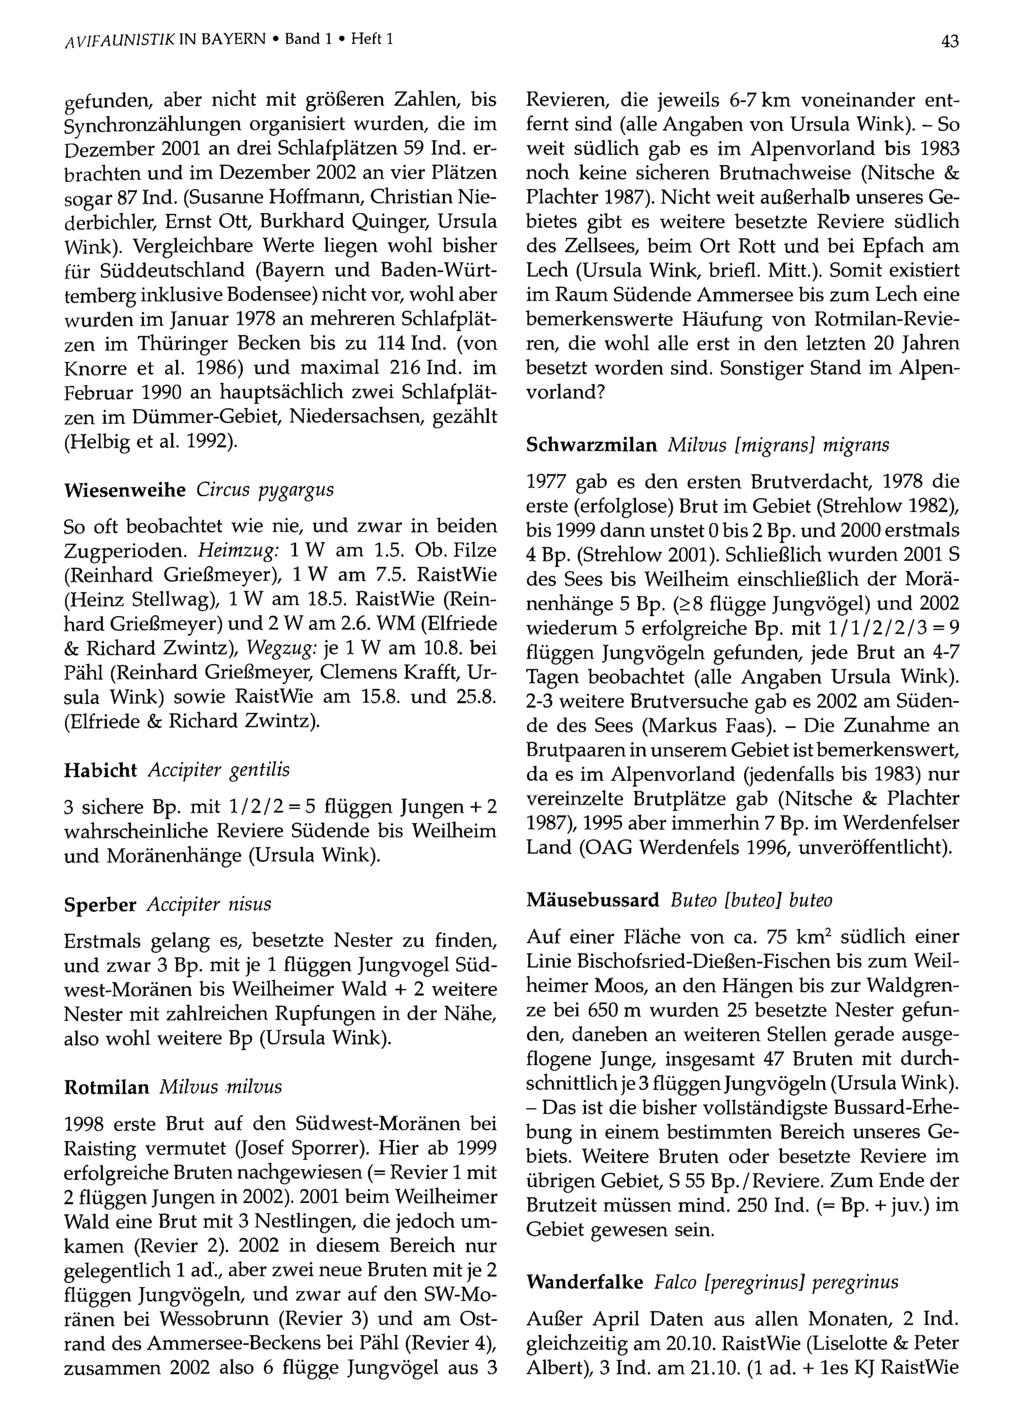 AVIFAUN1STIK IN BAYERN Band Ornithologische 1 Heft 1Gesellschaft Bayern, download unter www.biologiezentrum.